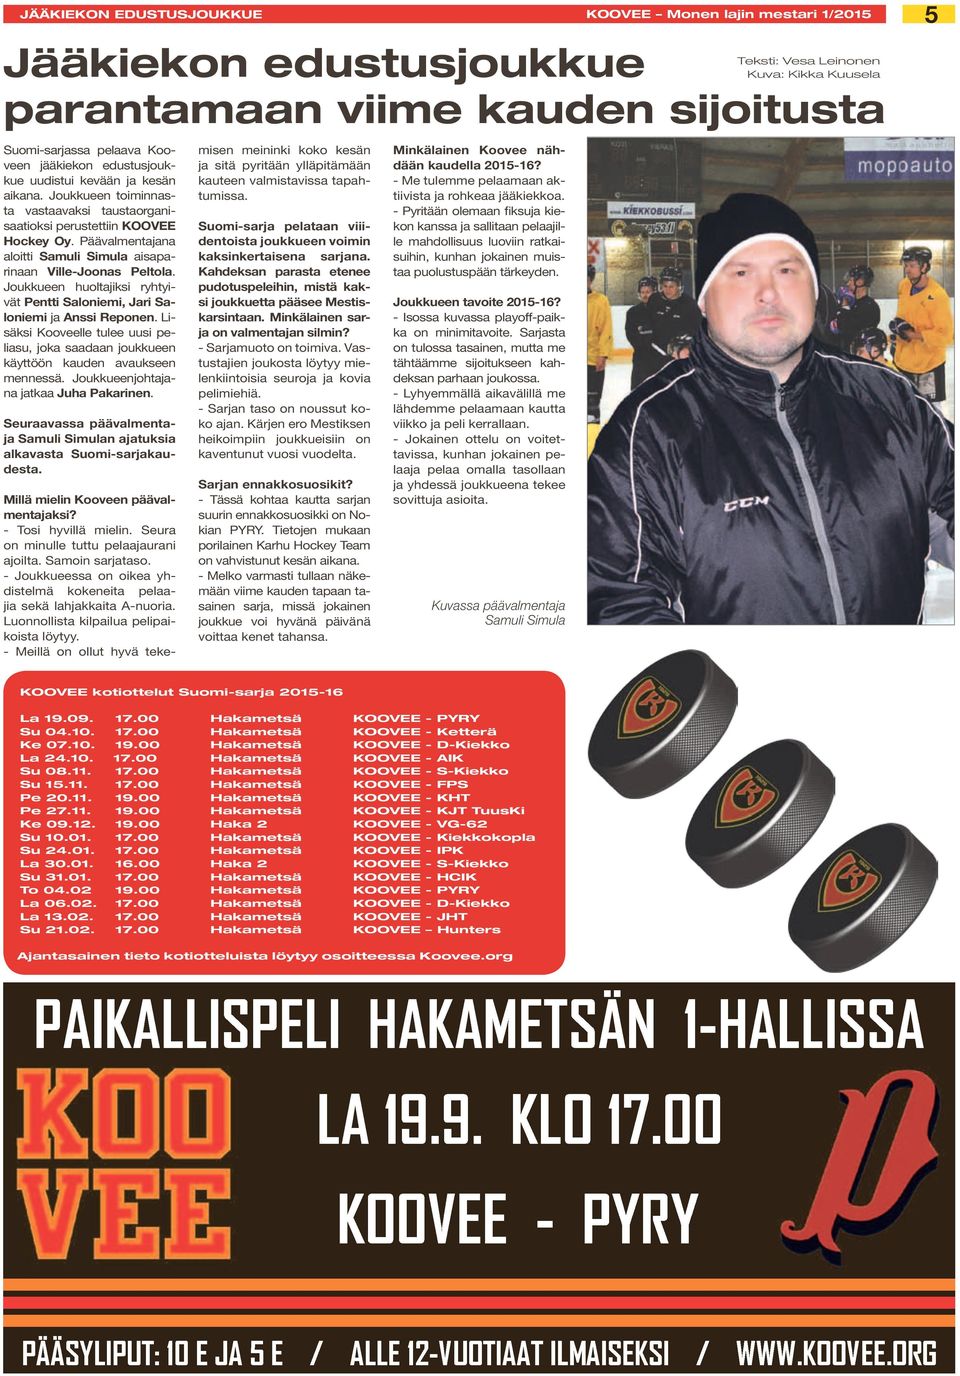 Joukkueen huoltajiksi ryhtyivät Pentti Saloniemi, Jari Saloniemi ja Anssi Reponen. Lisäksi Kooveelle tulee uusi peliasu, joka saadaan joukkueen käyttöön kauden avaukseen mennessä.